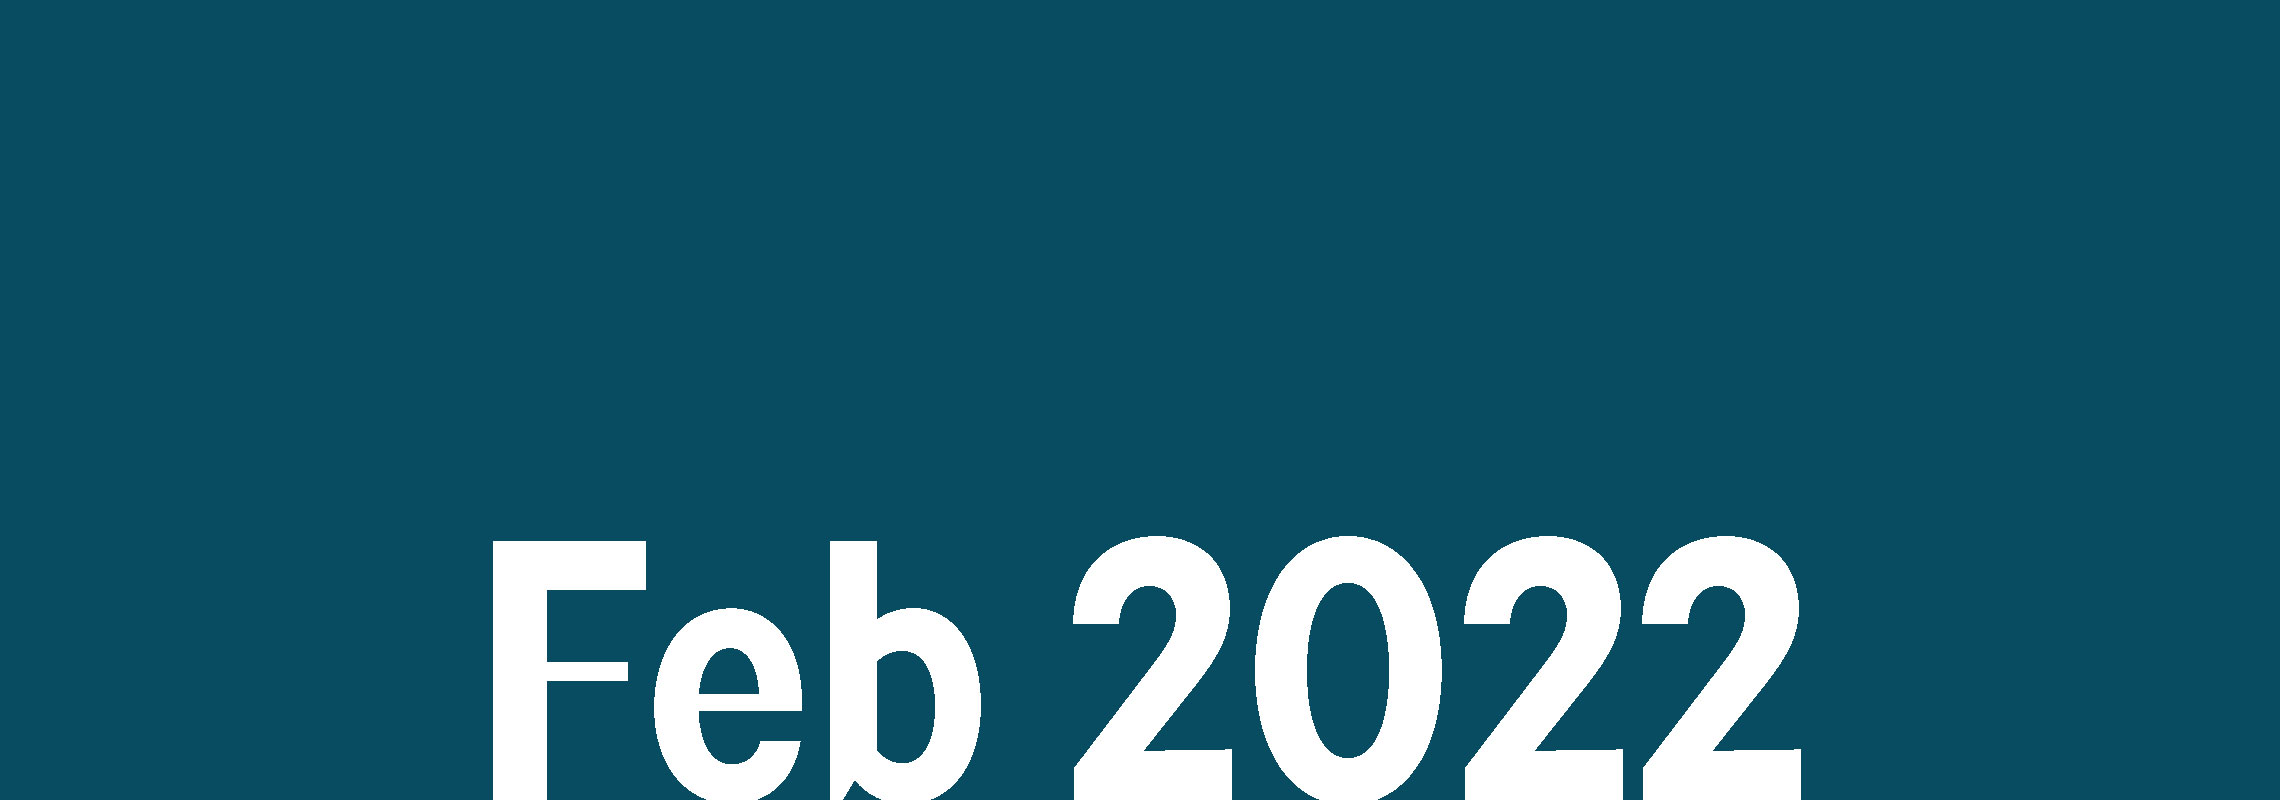 Matrix Newsletter February 2022